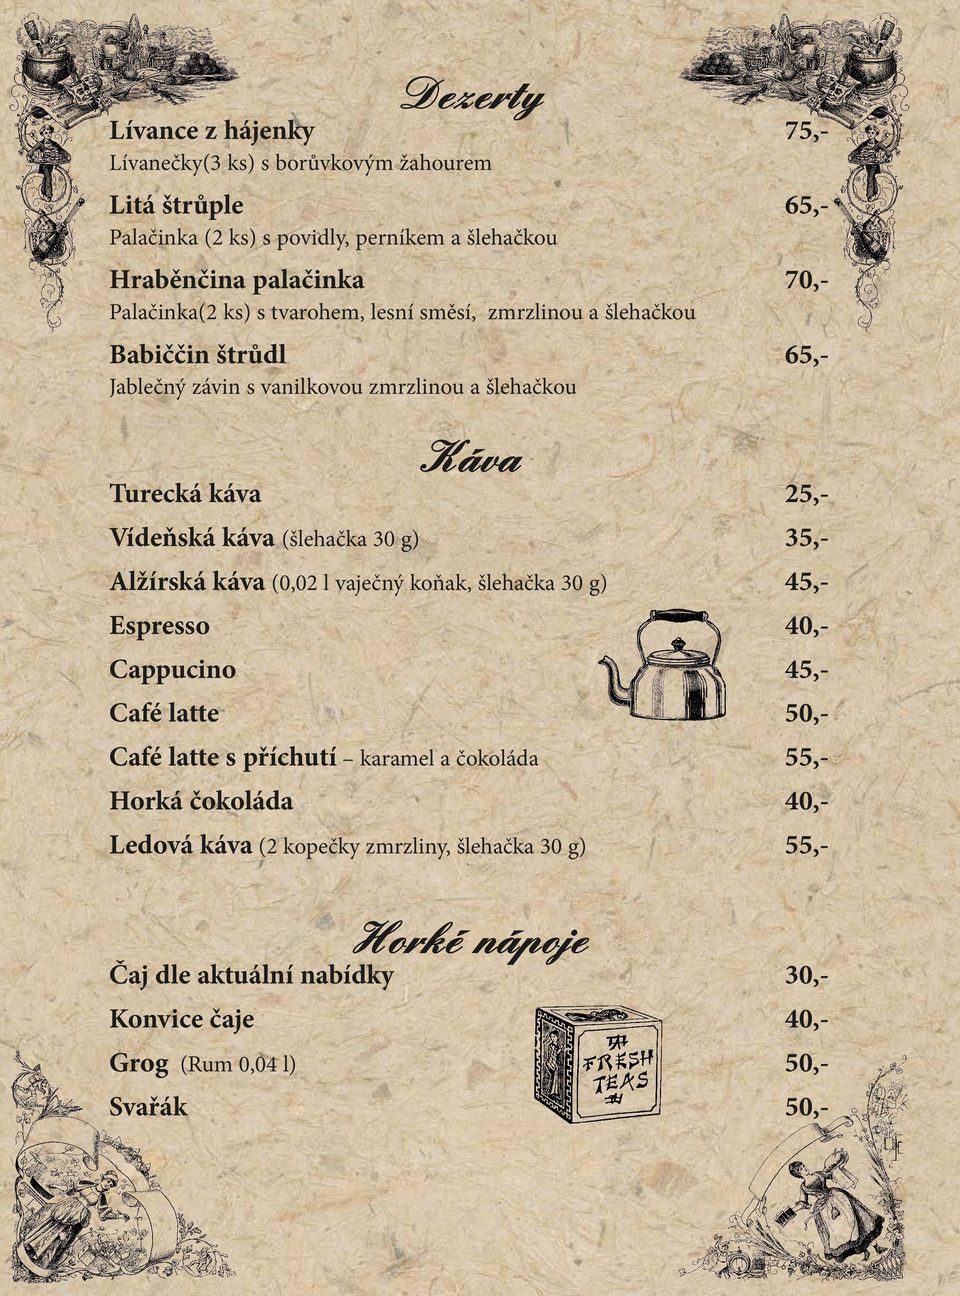 káva (šlehačka 30 g) 35,- Alžírská káva (0,02 l vaječný koňak, šlehačka 30 g) 45,- Espresso 40,- Cappucino 45,- Café latte 50,- Café latte s příchutí karamel a